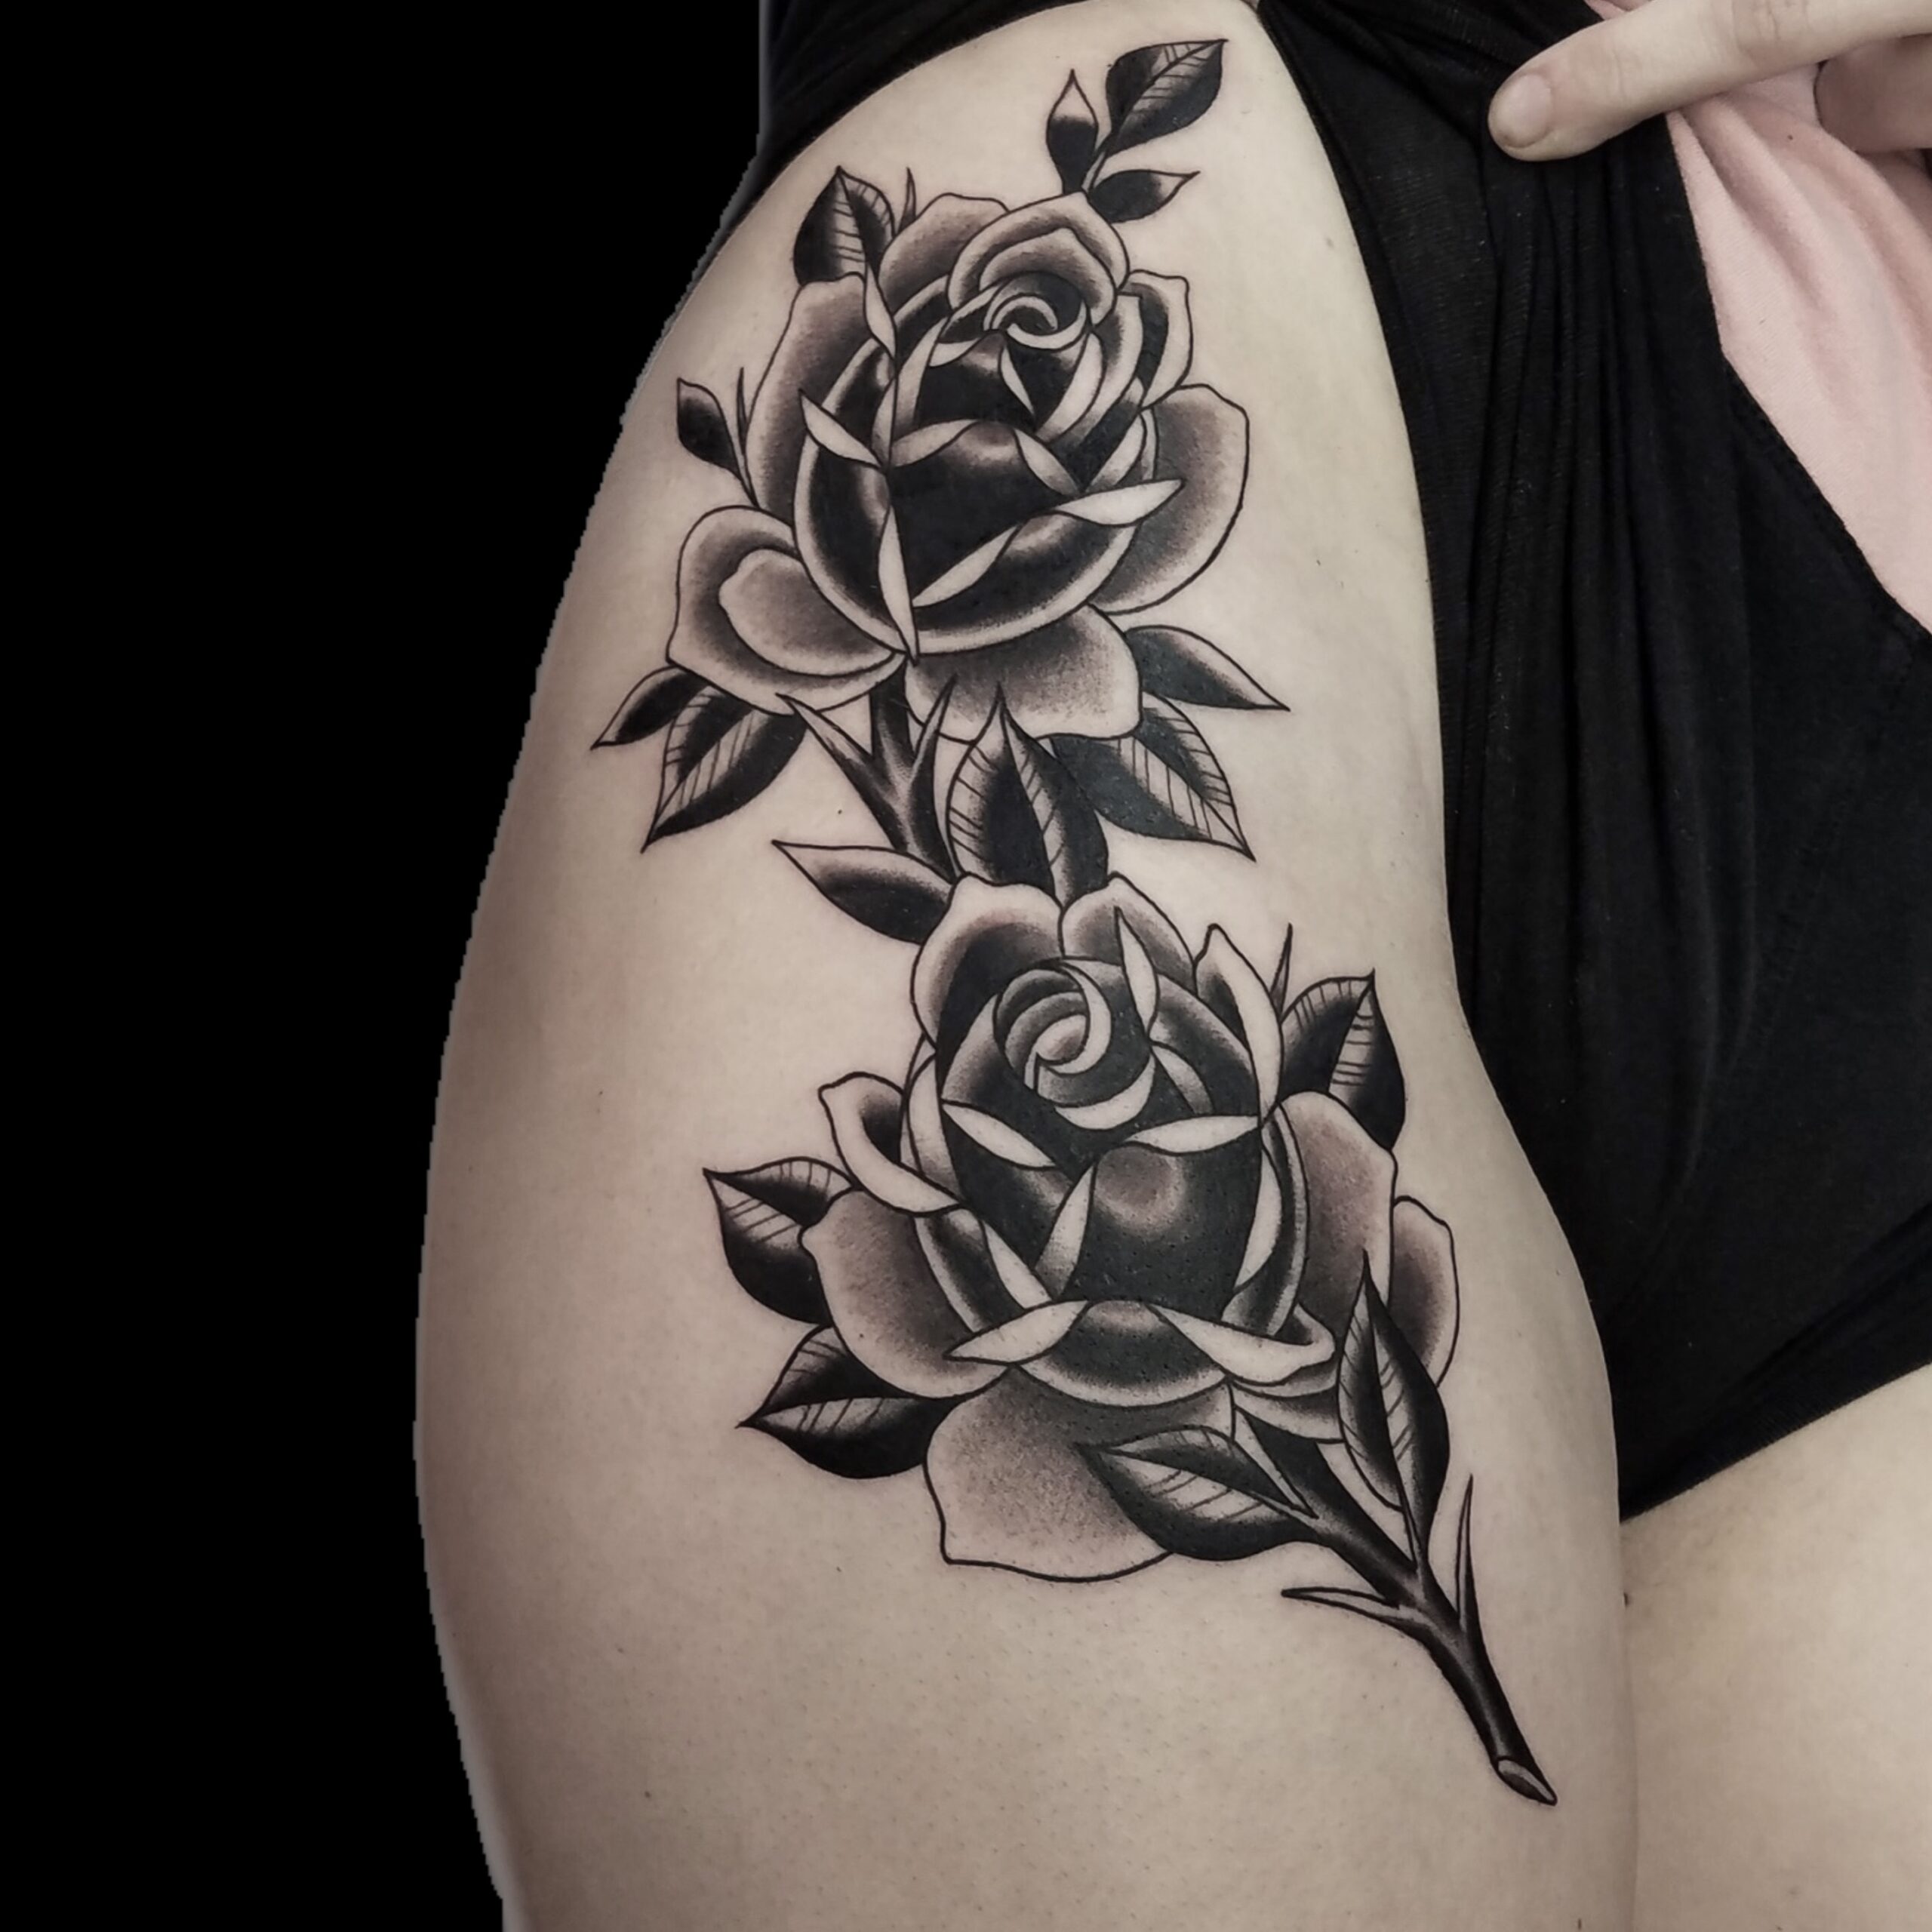 Blackwork Tattoo, Upper Arm Tattoo, Rose Tattoo | DH Tattooing - Livermore, California's Premier Tattoo Studio